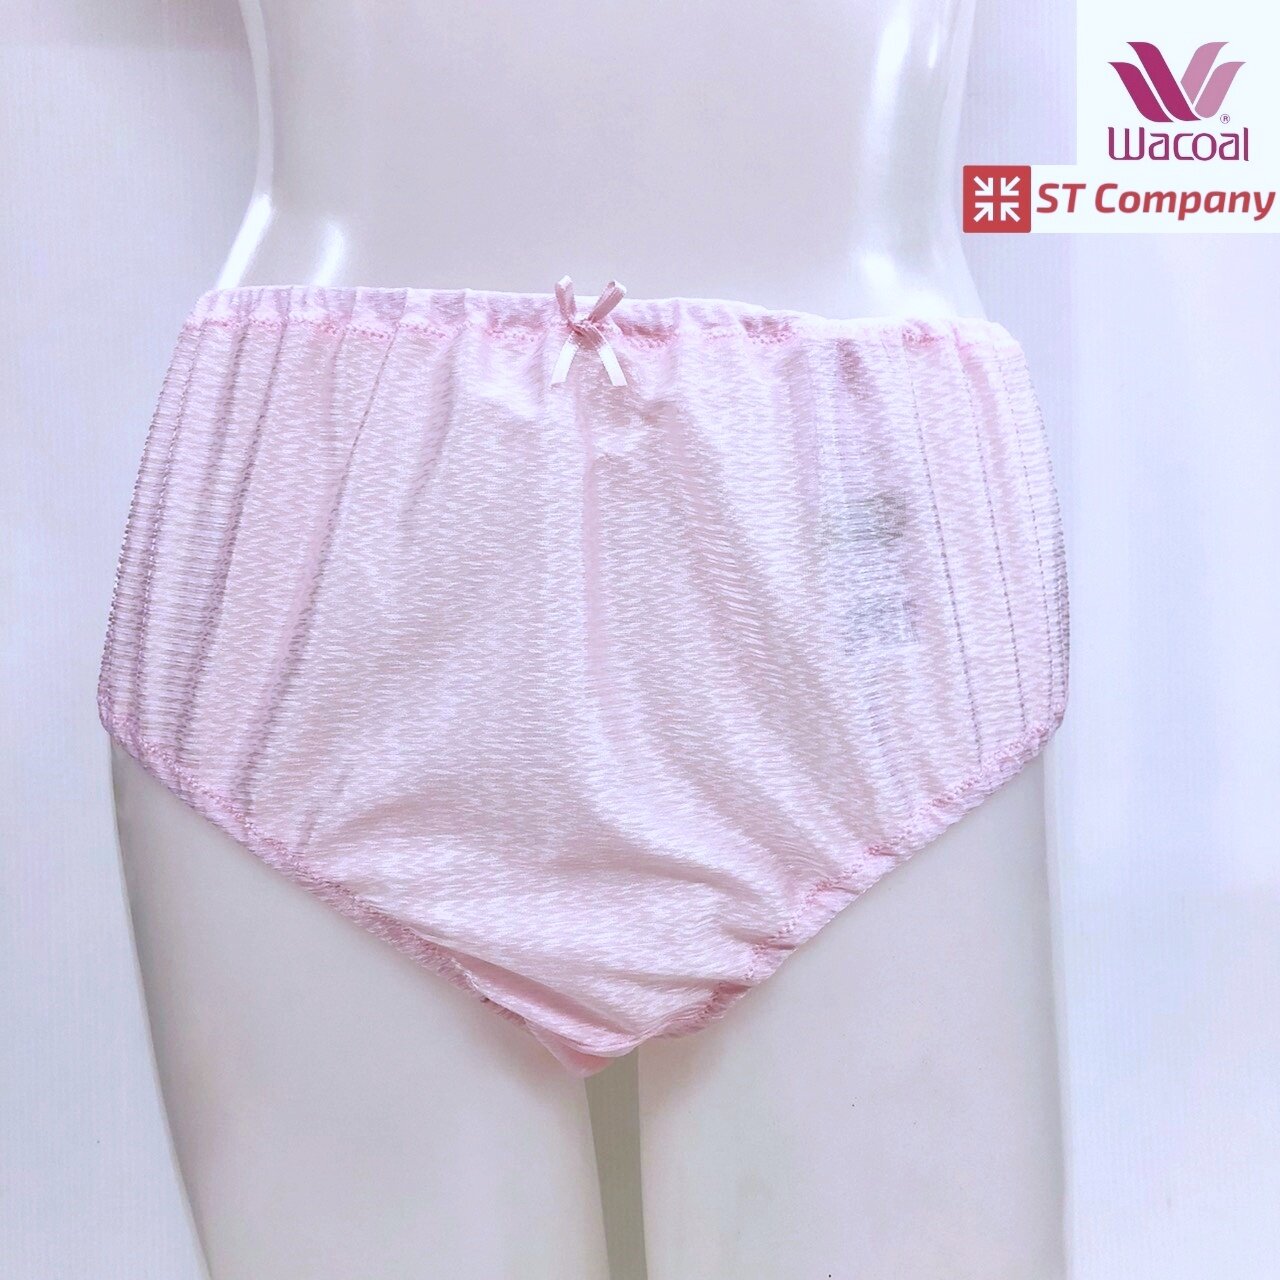 กางเกงในร้อยยาง Wacoal แบบเต็มตัว สีน้ำตาล (OT) รุ่น WU4948 1 ตัว เนื้อผ้าเงางาม ผิวสัมผัสเนียนนุ่ม ใส่สบายซักง่าย แห้งเร็ว วาโก้ ร้อยยาง กางเก